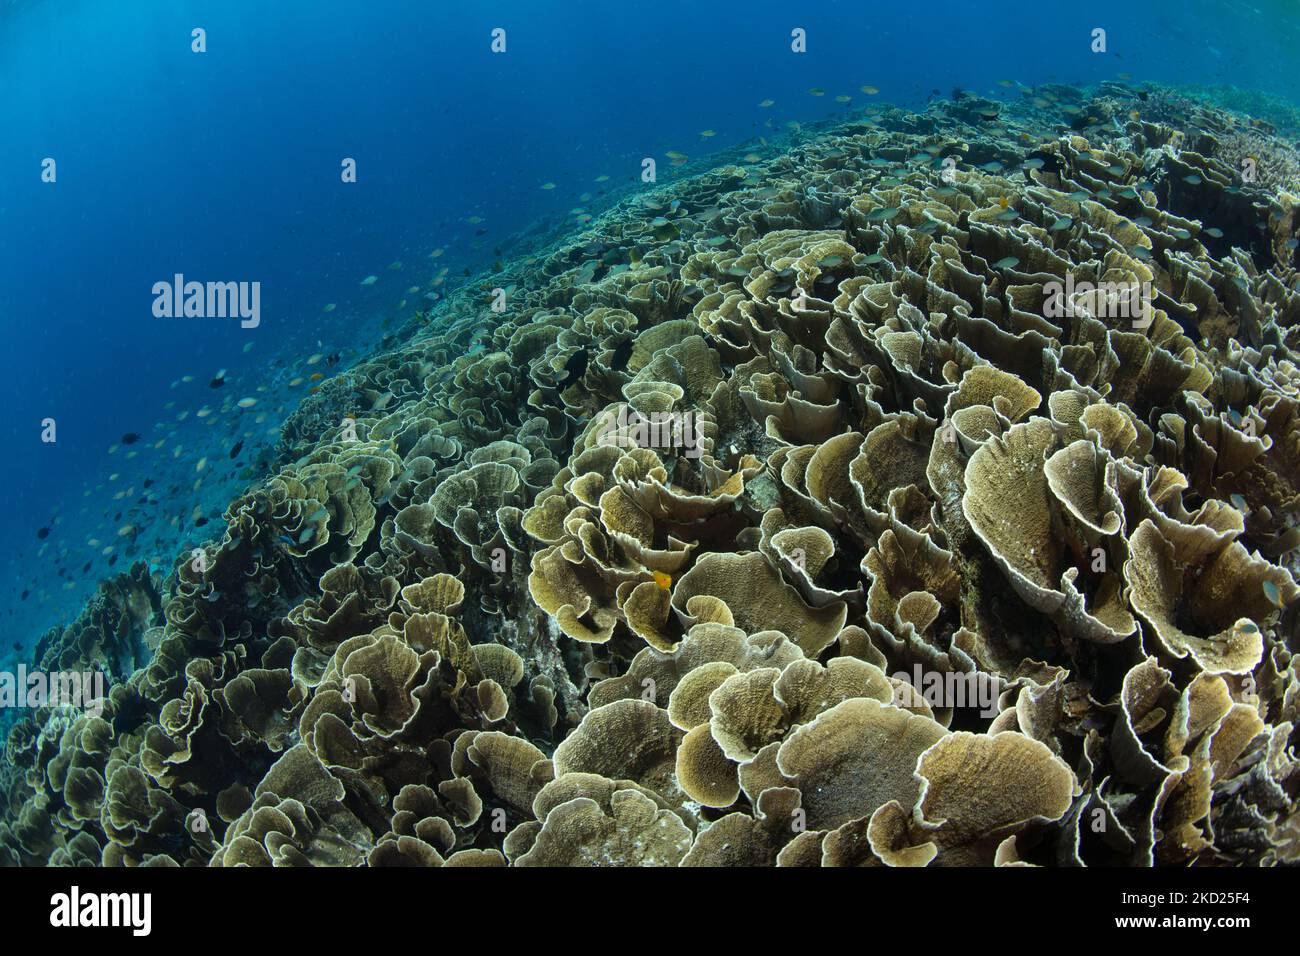 Brüchige, blättrige Korallen gedeihen an einem Riffhang im Komodo-Nationalpark, Indonesien. Diese tropische Region ist für ihre hohe marine Biodiversität bekannt. Stockfoto